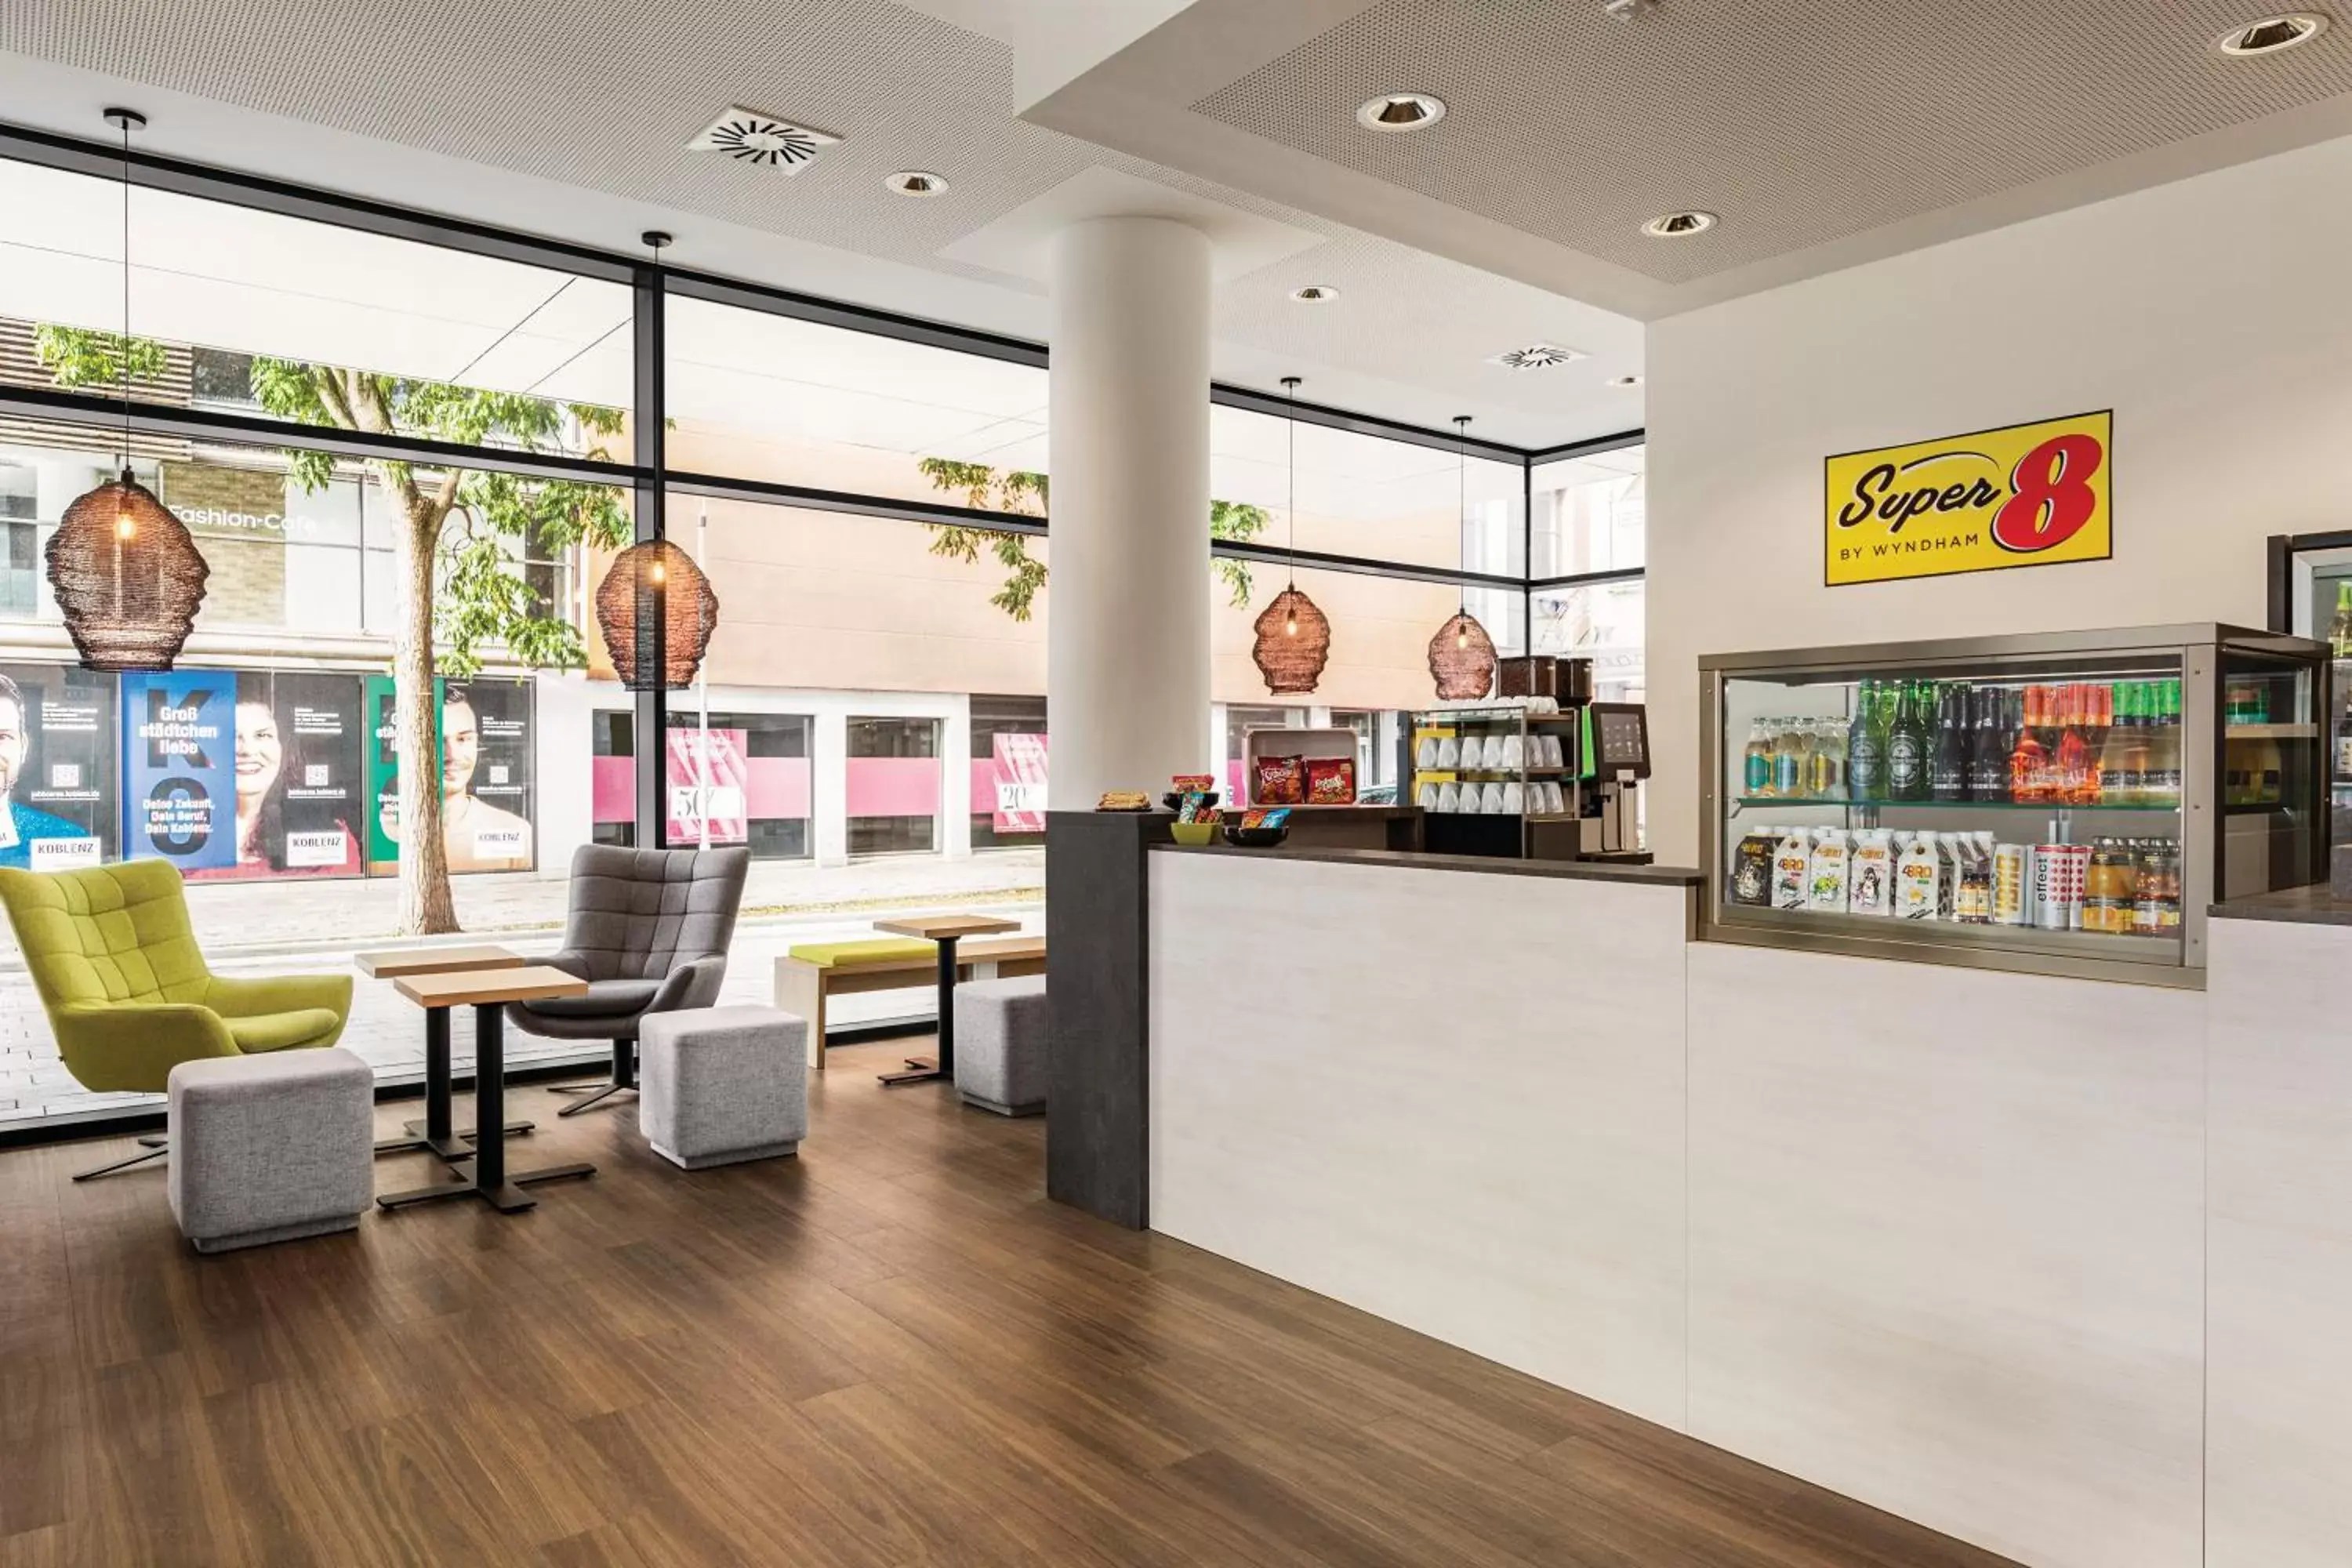 Lounge or bar, Lobby/Reception in Super 8 by Wyndham Koblenz